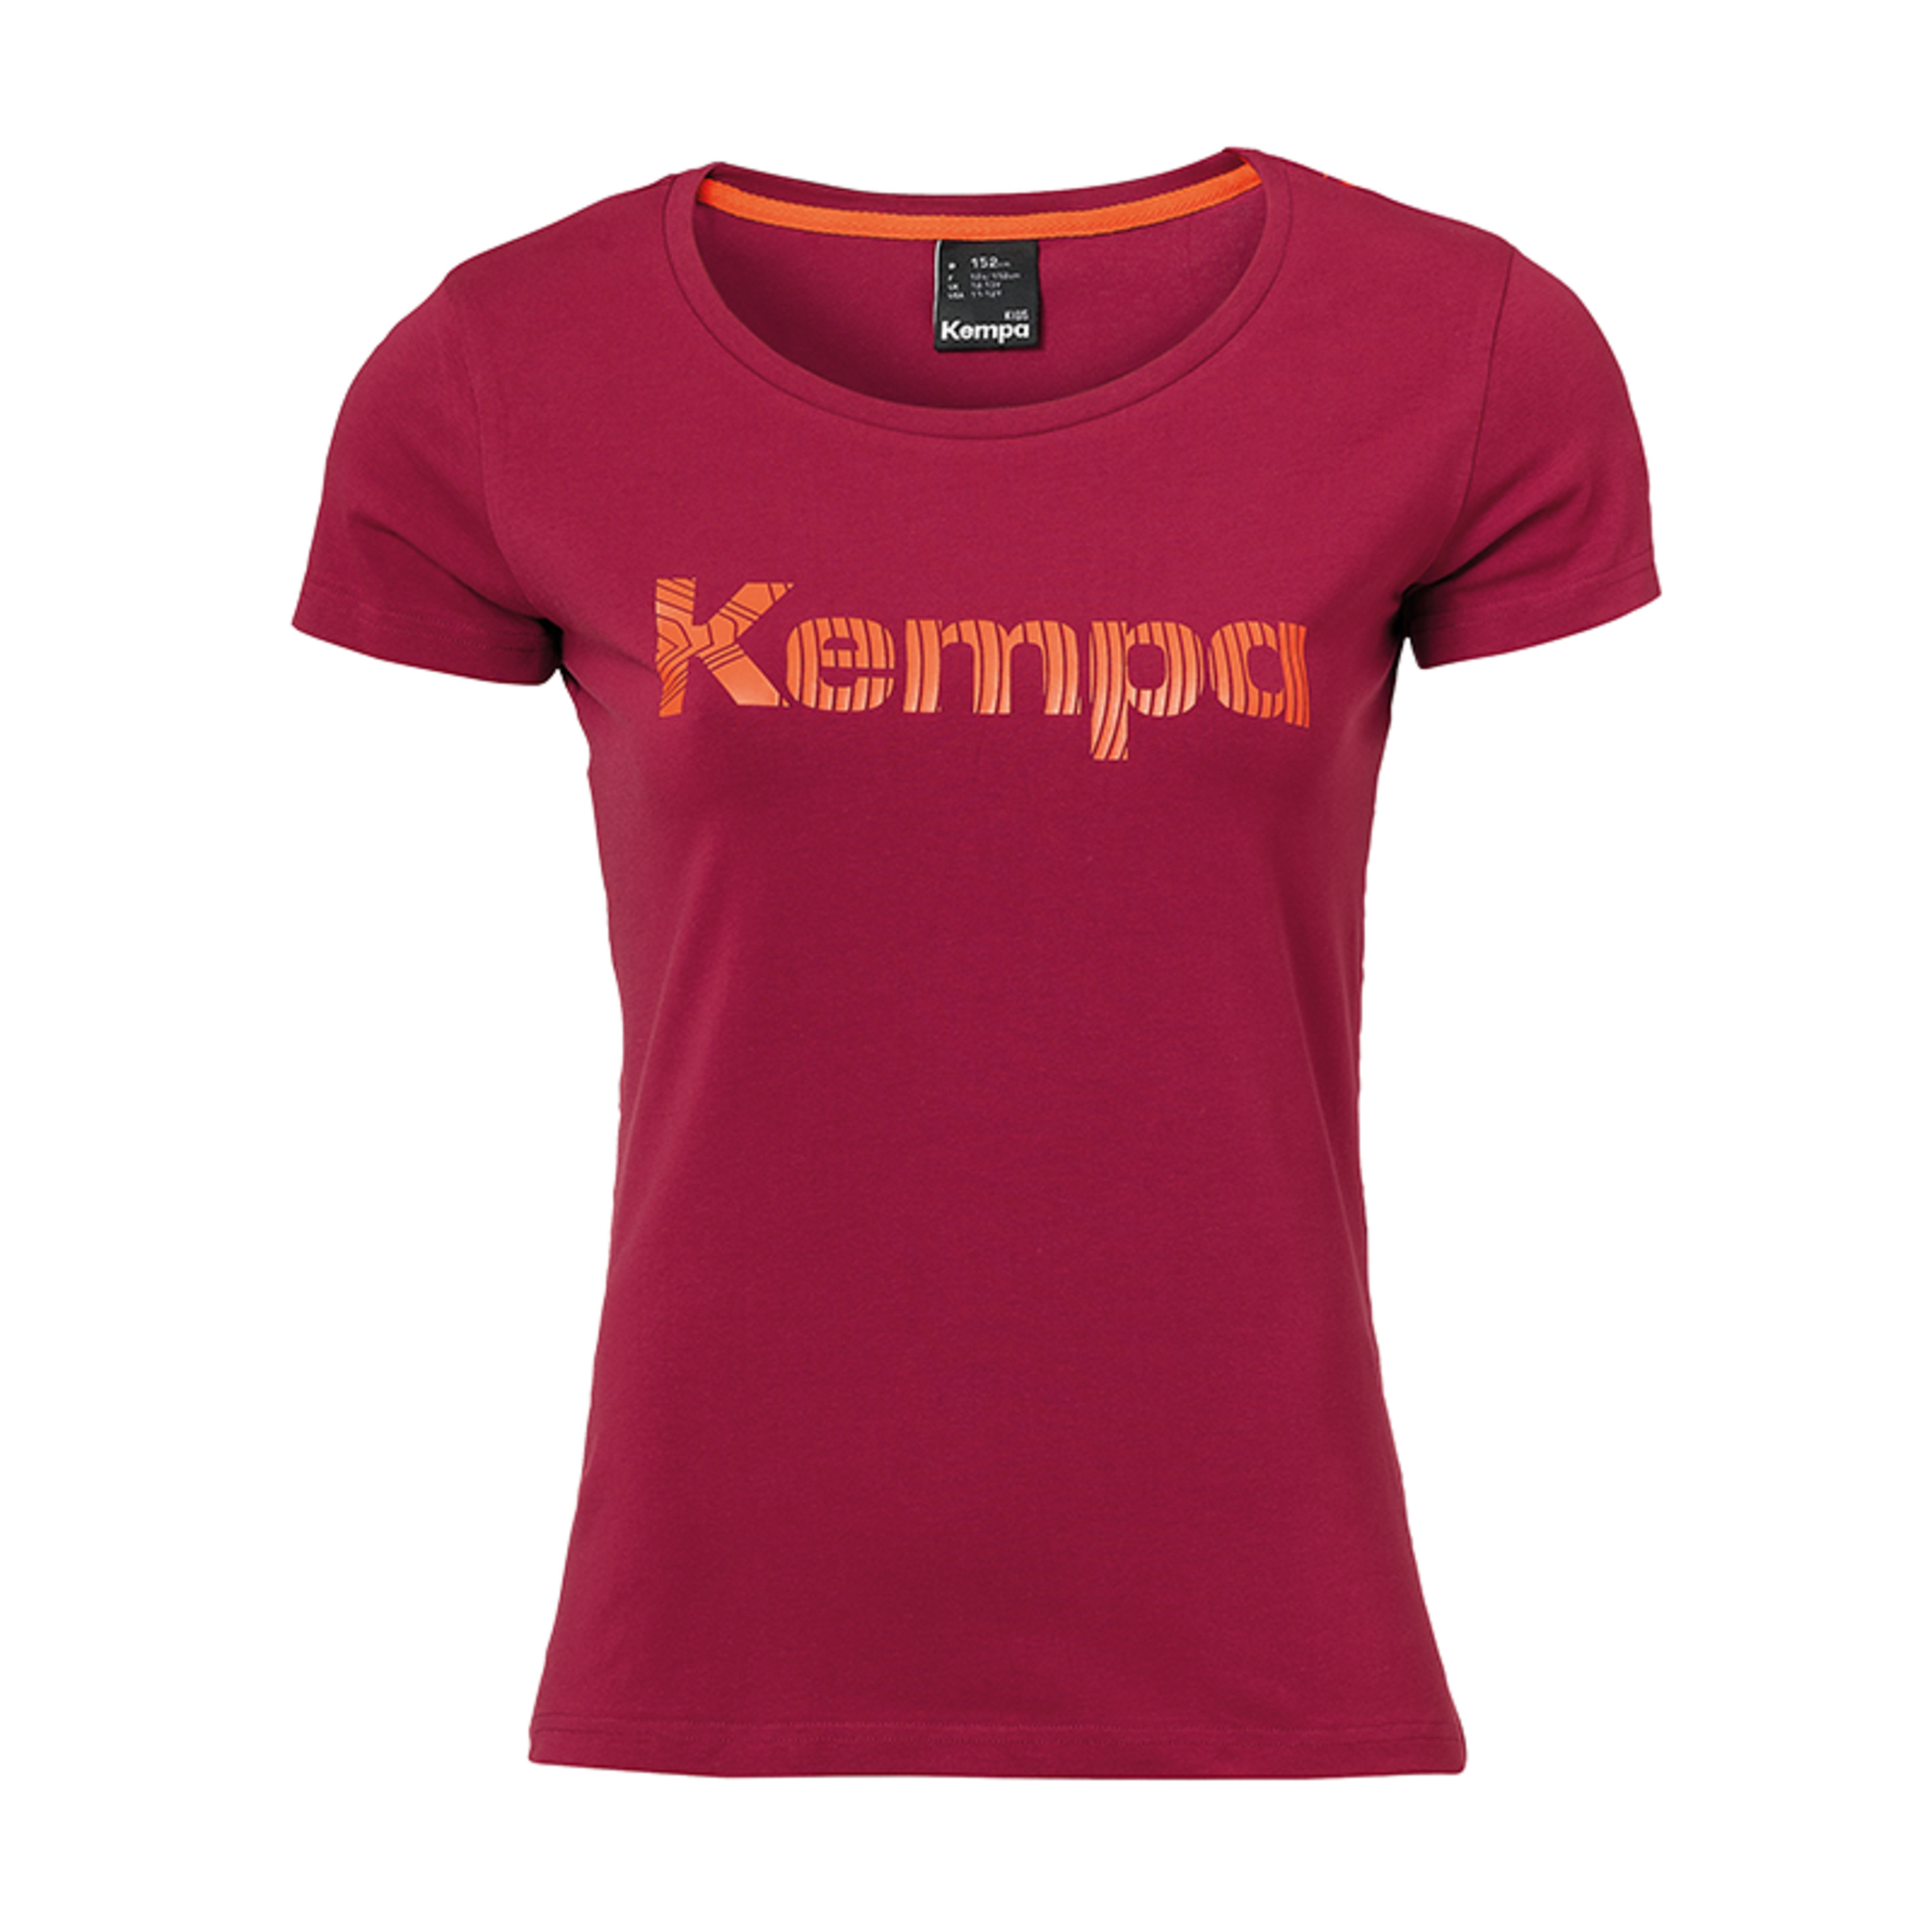 Graphic T-shirt Girls Rojo Oscuro Kempa - rojo - Graphic T-shirt Girls Rojo Oscuro Kempa  MKP